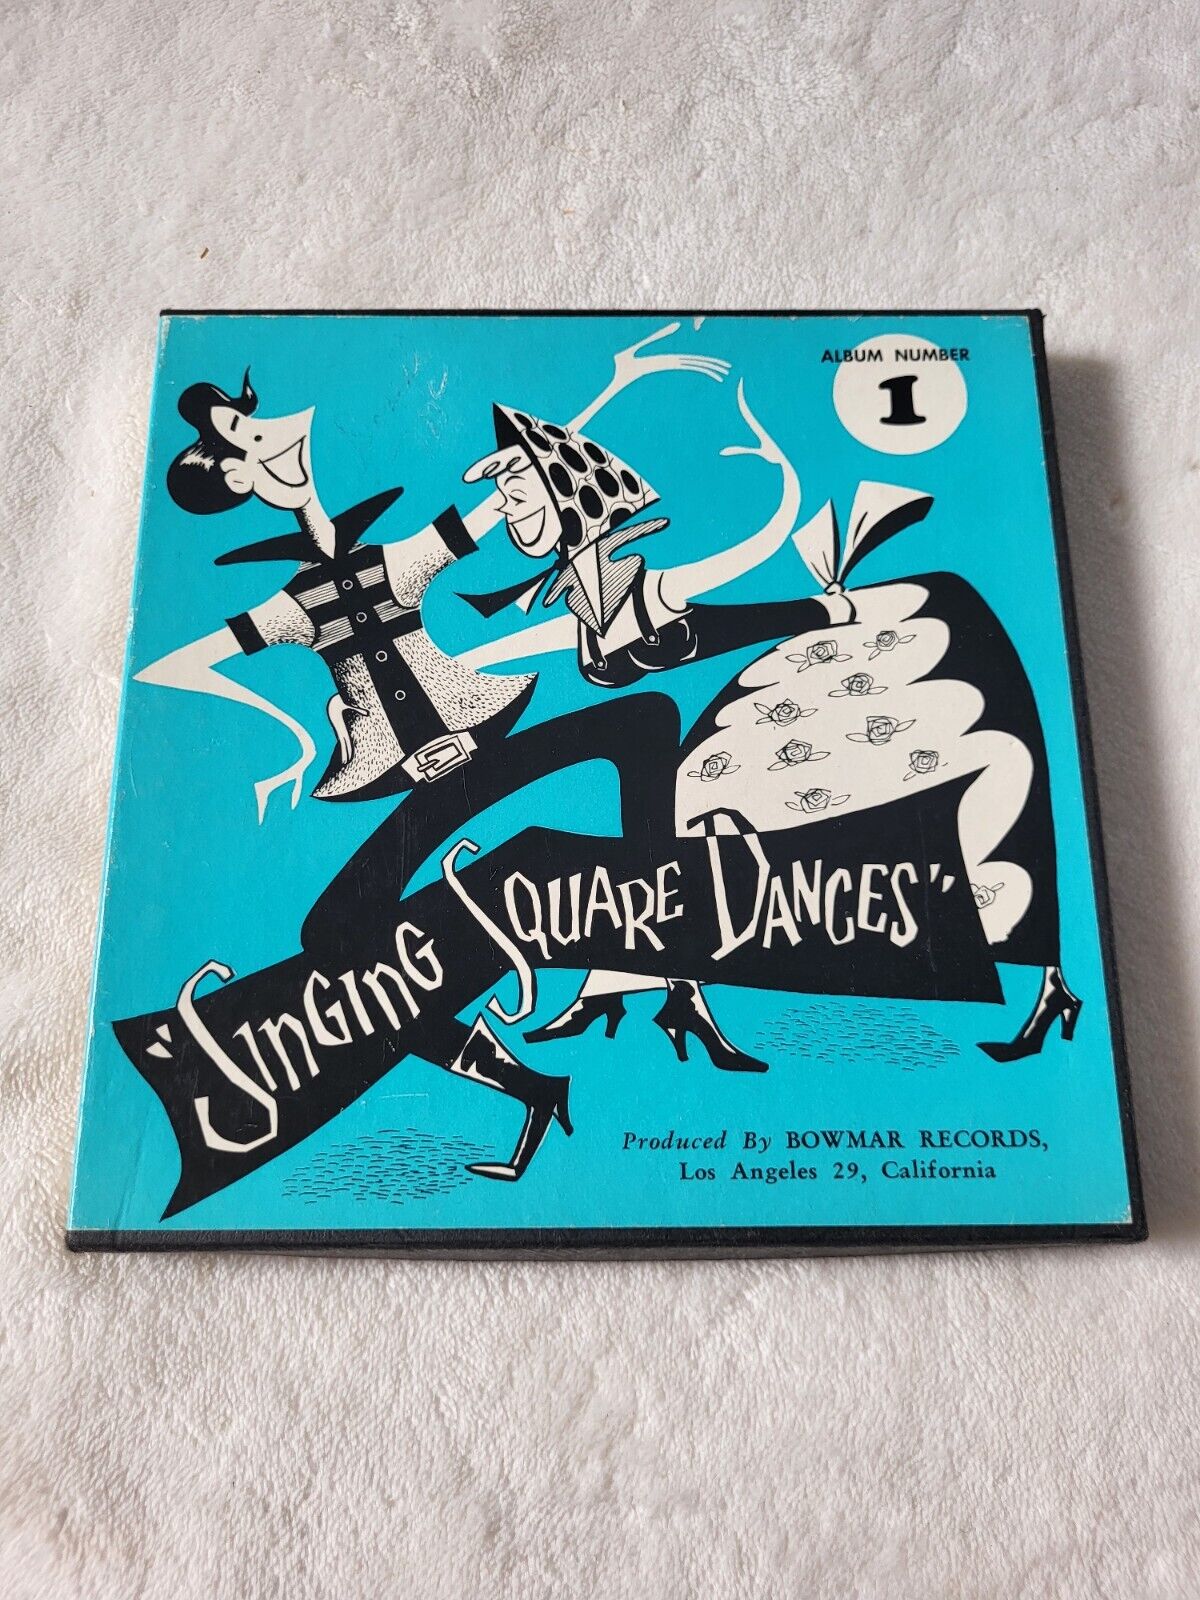 Vintage Singing Square Dances  #1 Bowmar Records New Condition 45 Rpm